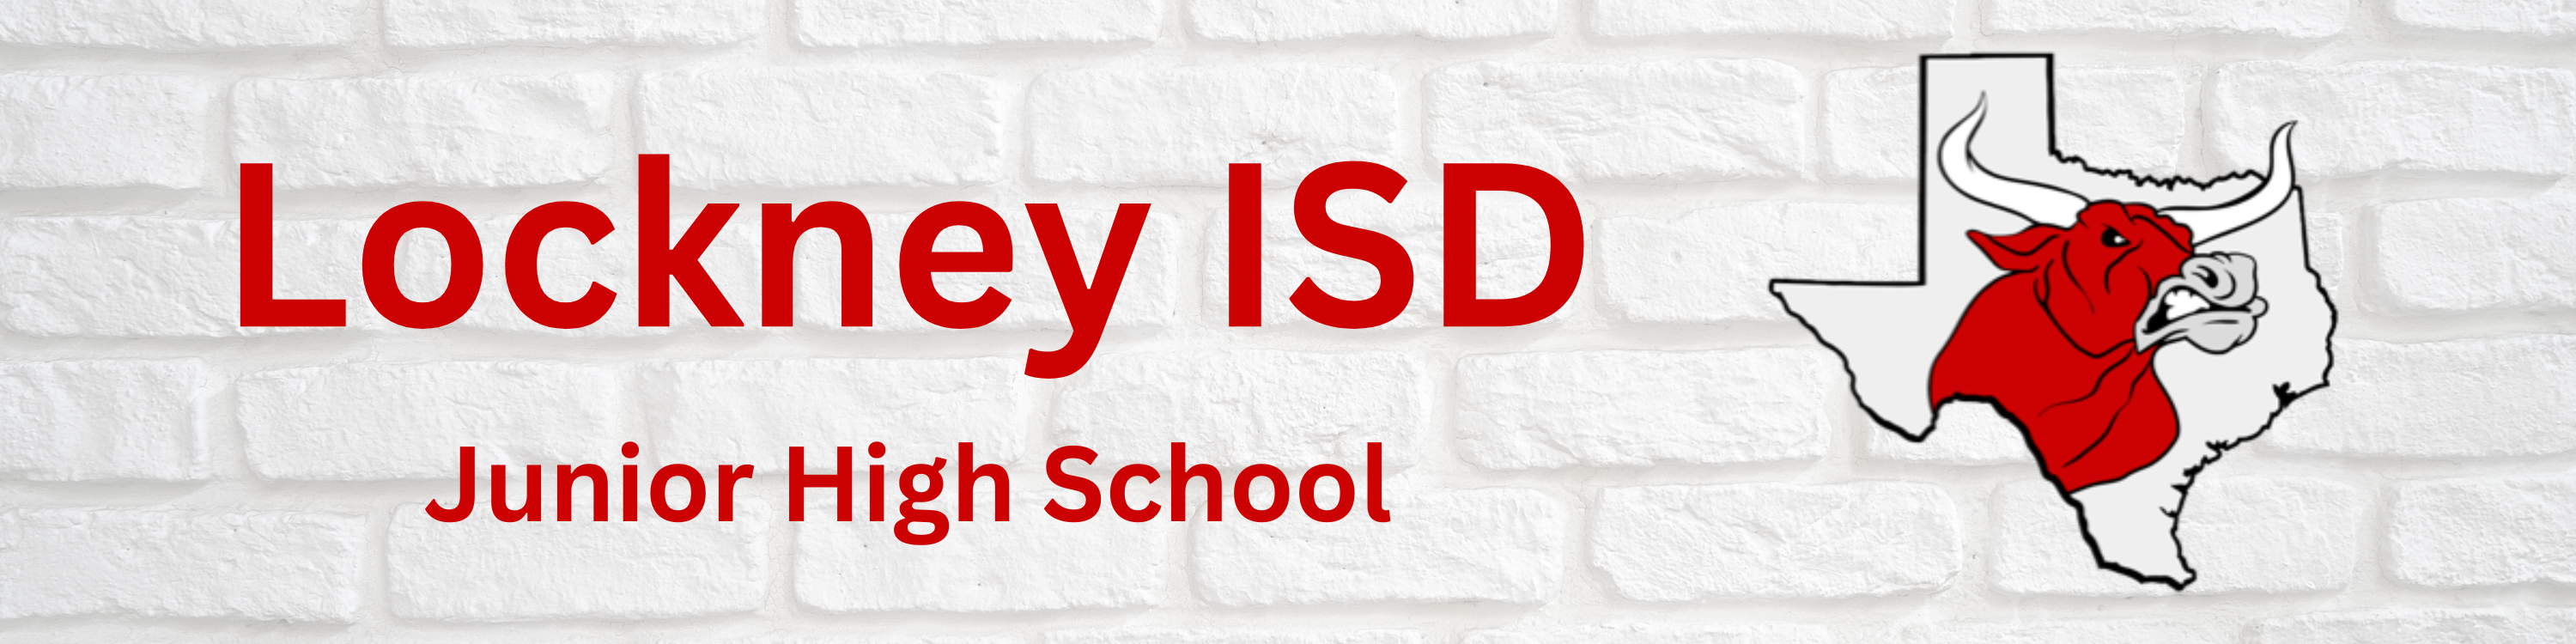 Lockney ISD Junior High School